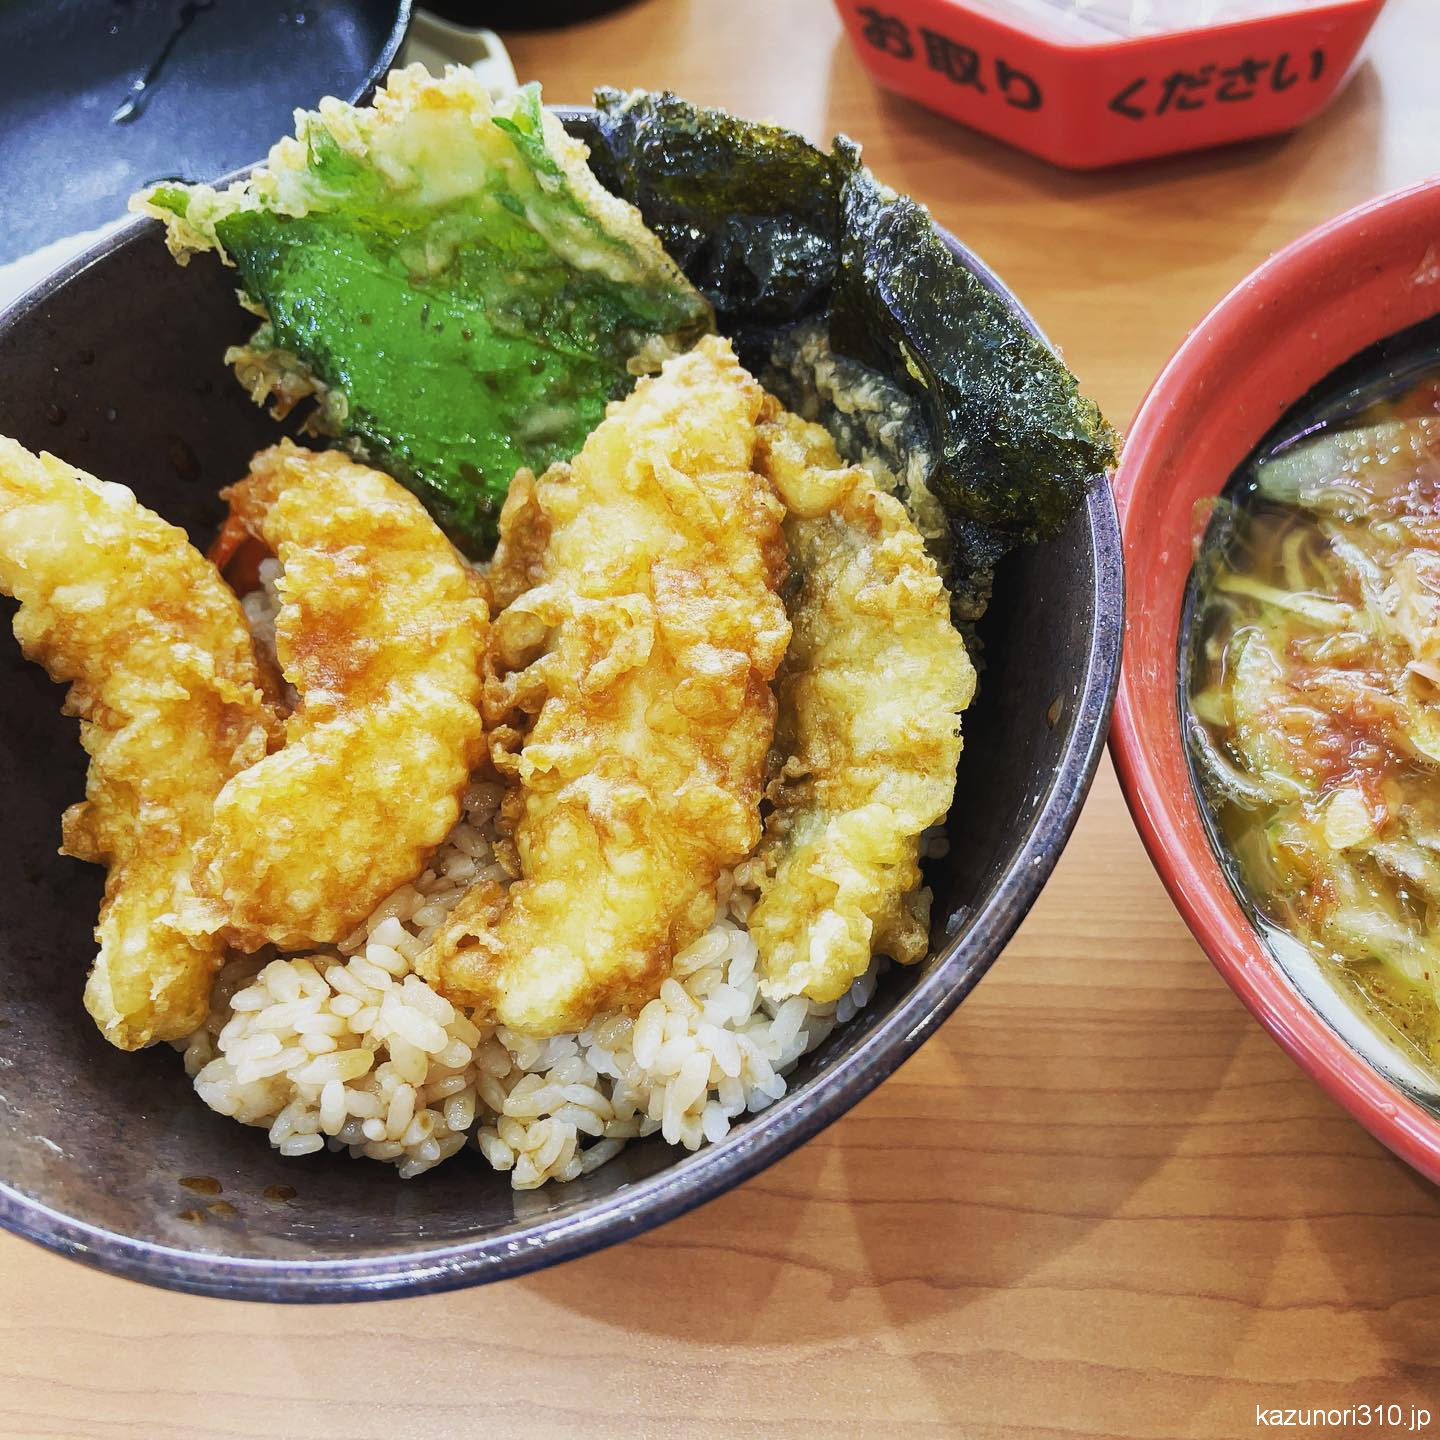 #くら寿司 #天丼 #ラーメン #ランチ 天ぷらが小さい。セットで770円だったかな。